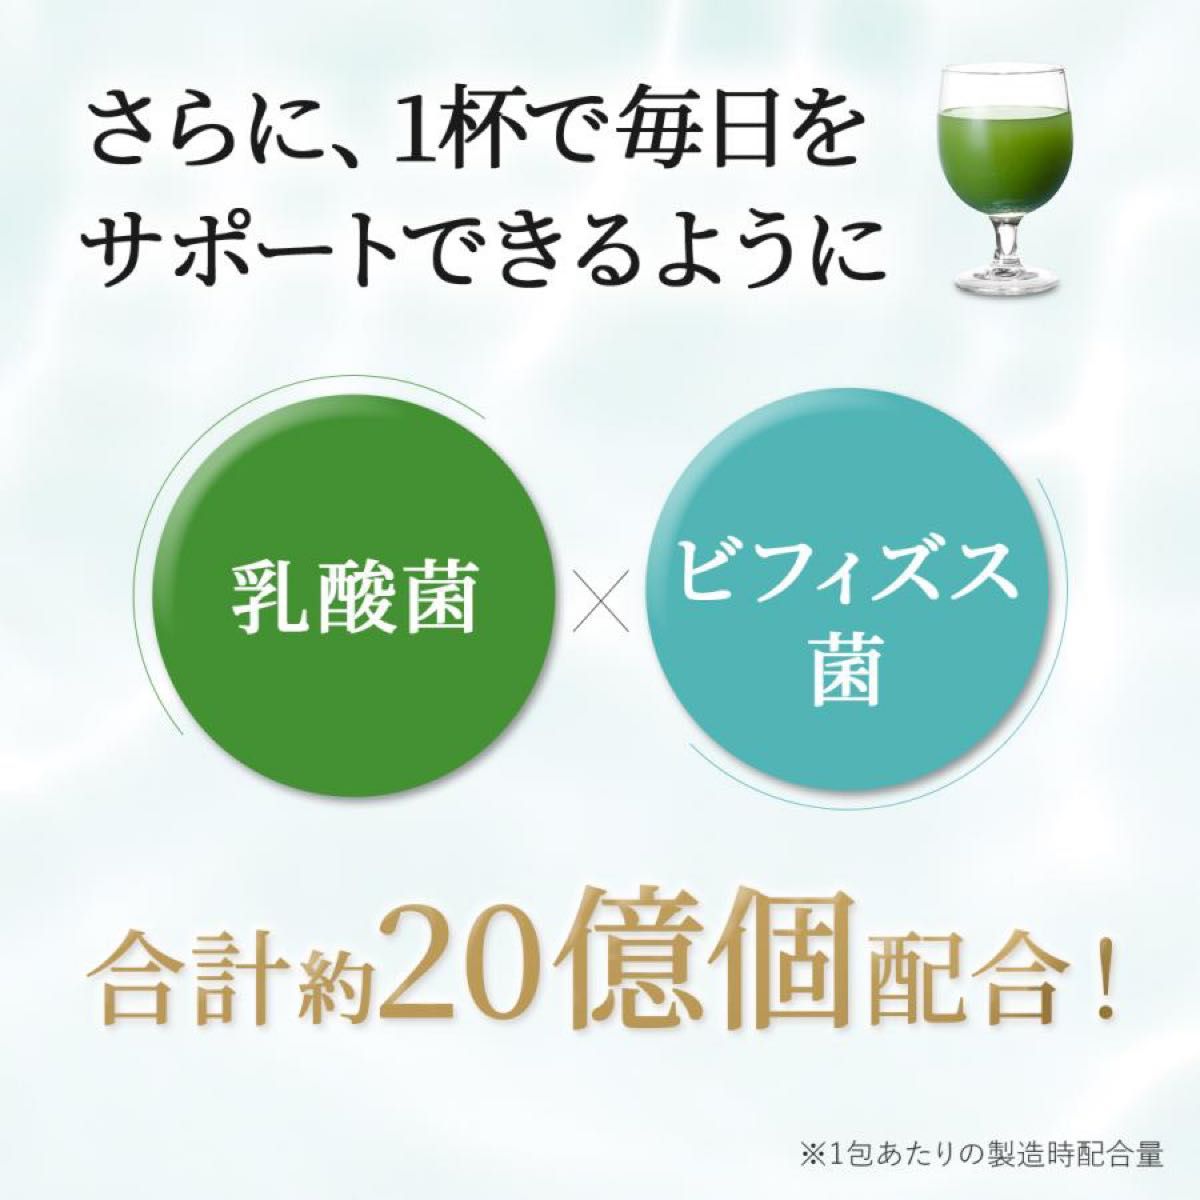 【新品未開封】 Ｗの健康青汁 新日本製薬 機能性表示食品 青汁 2箱 正規品 体脂肪 中性脂肪 血圧 GABA エラグ酸 乳酸菌